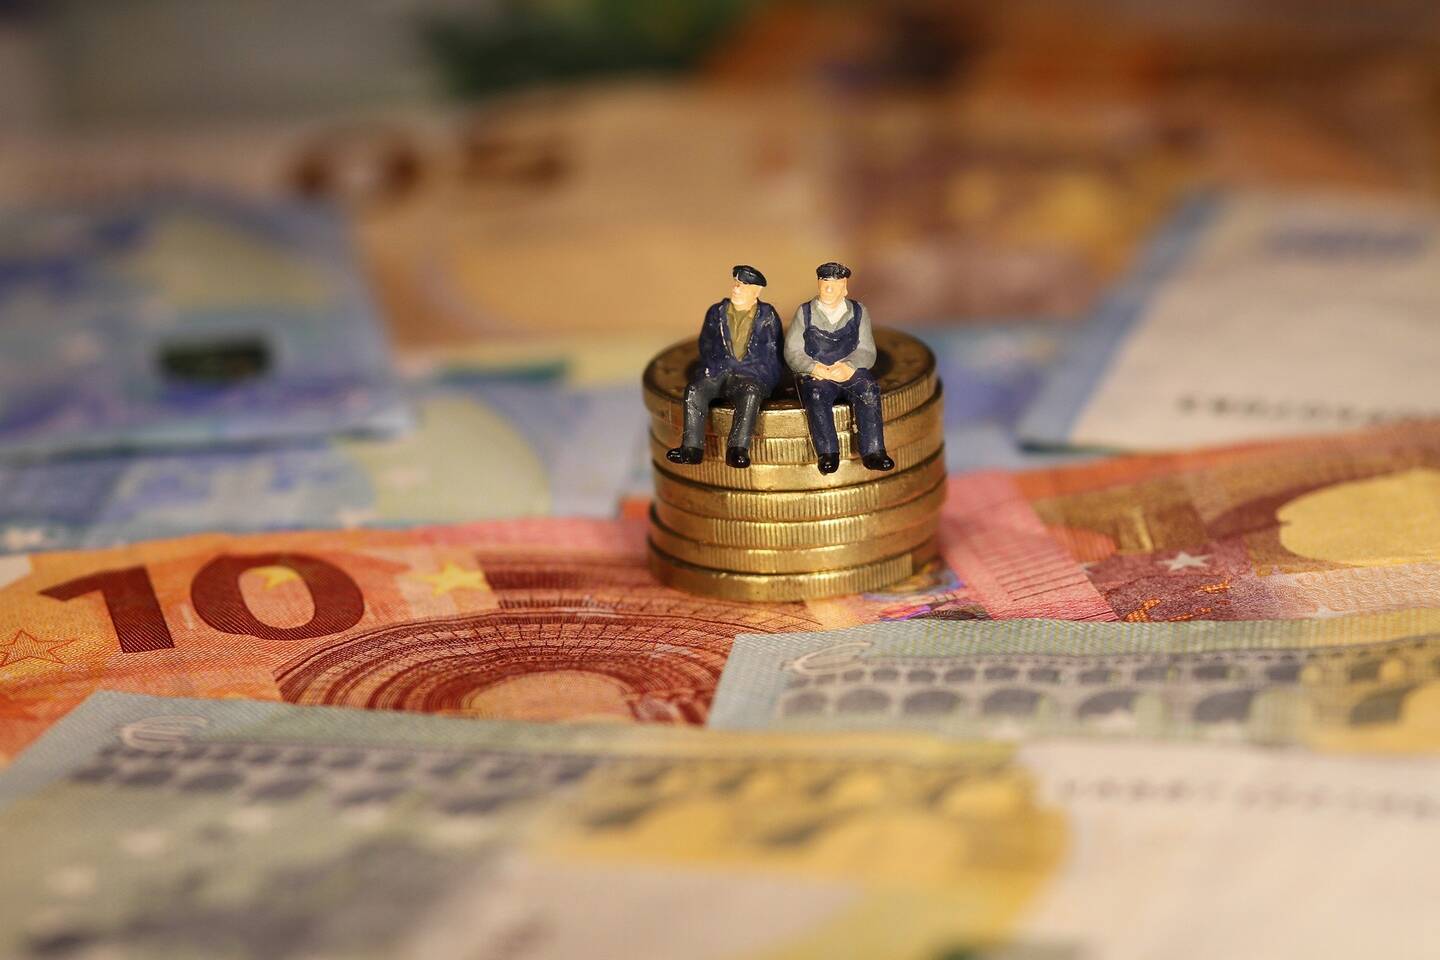 twee figuurtjes op een stapel euro munten met daaronder briefgeld in euros